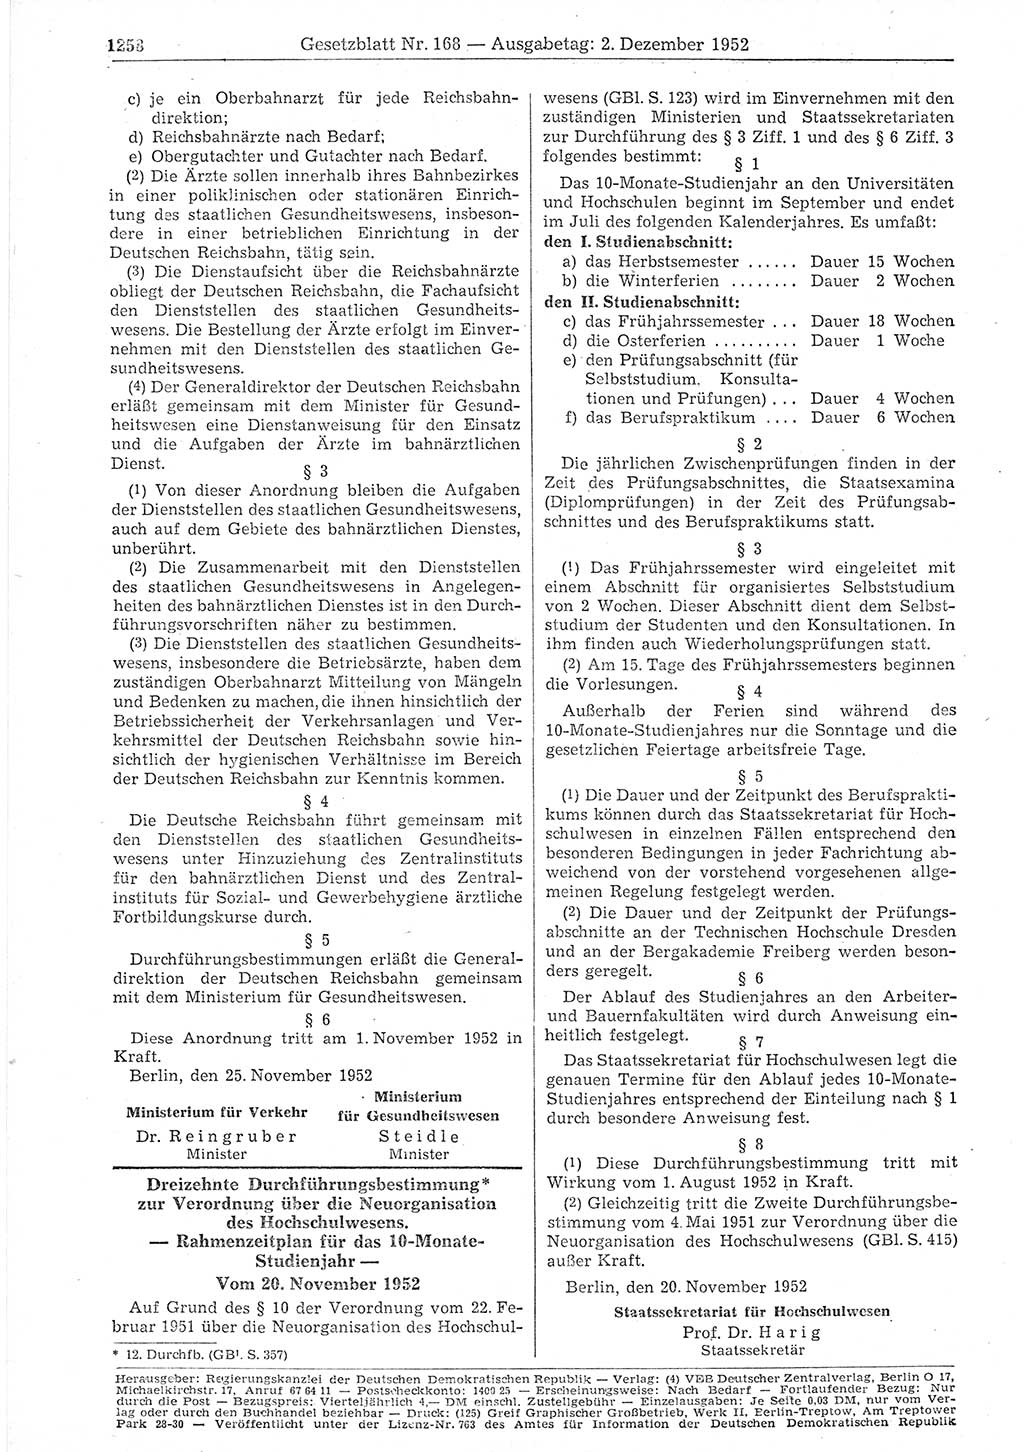 Gesetzblatt (GBl.) der Deutschen Demokratischen Republik (DDR) 1952, Seite 1258 (GBl. DDR 1952, S. 1258)